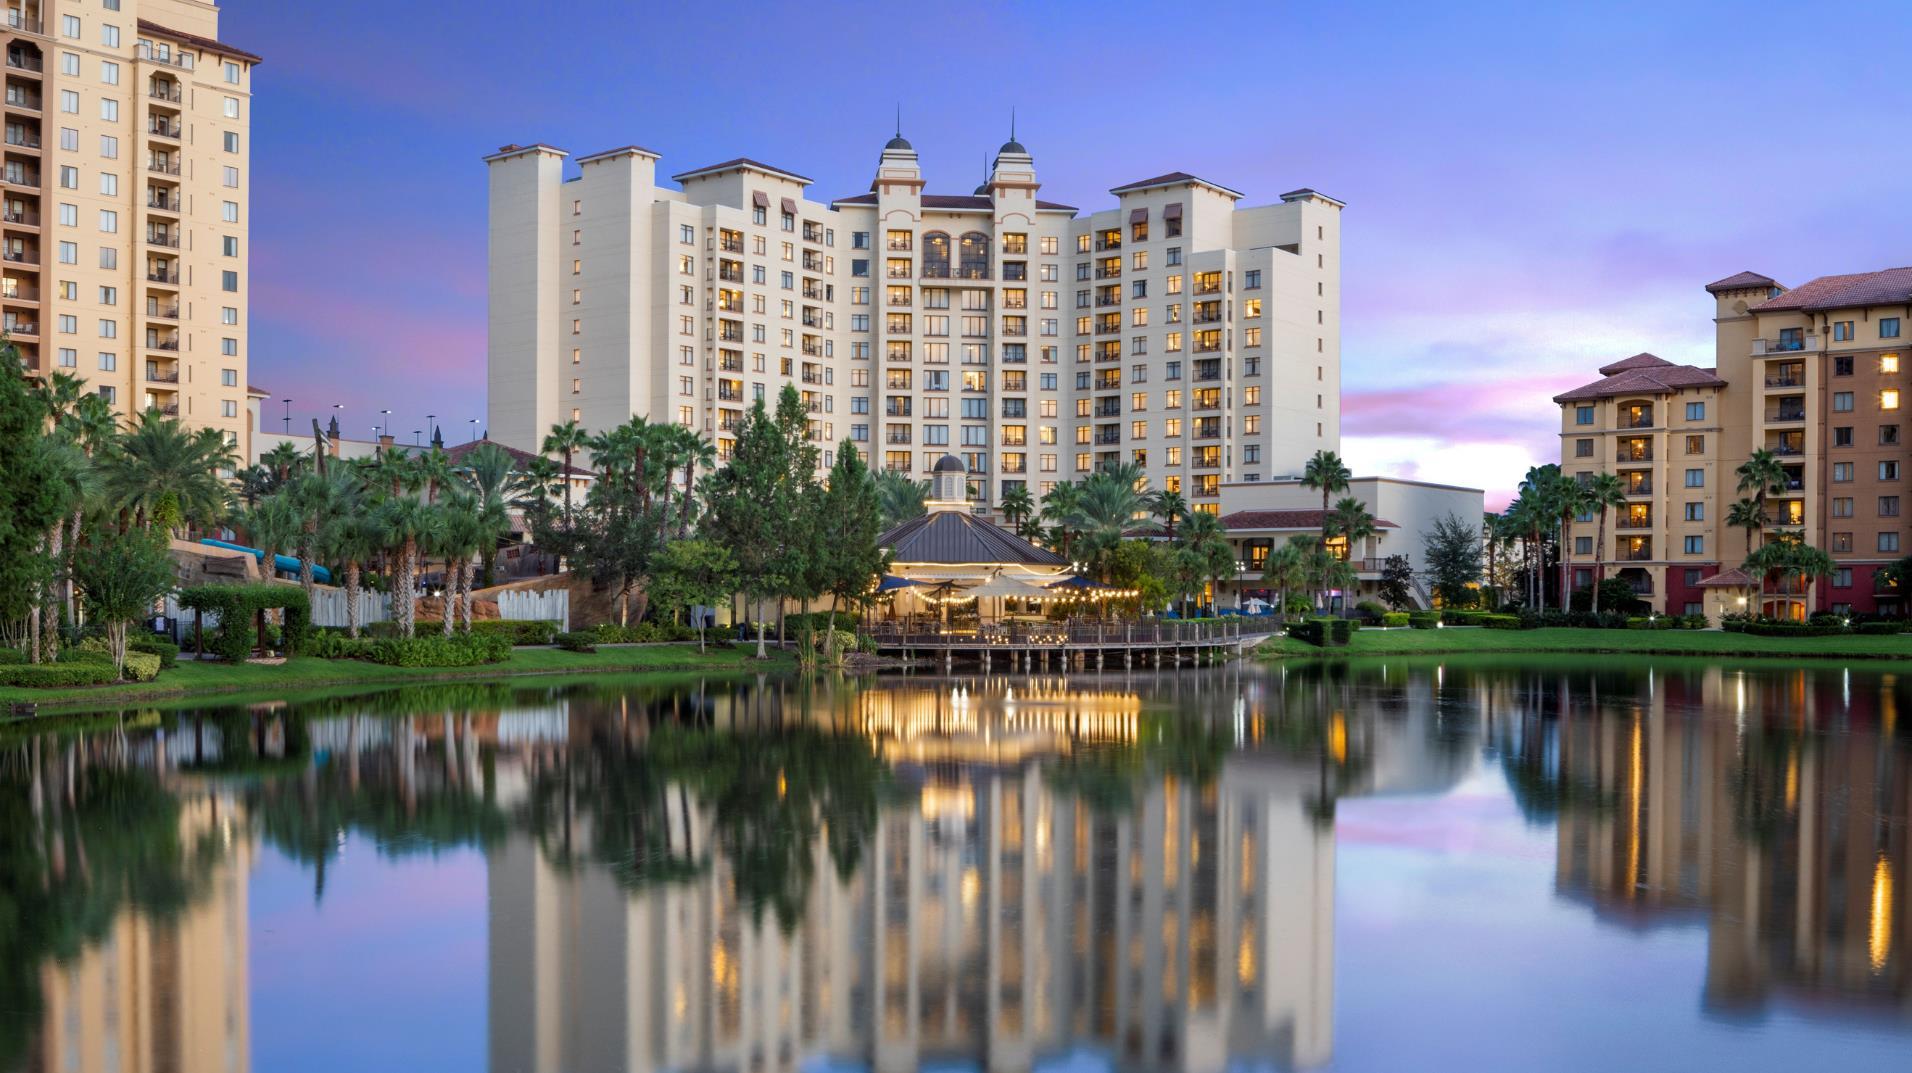 Wyndham Grand Orlando Resort Bonnet Creek, a Wyndham Meetings Collection Hotel in Orlando, FL